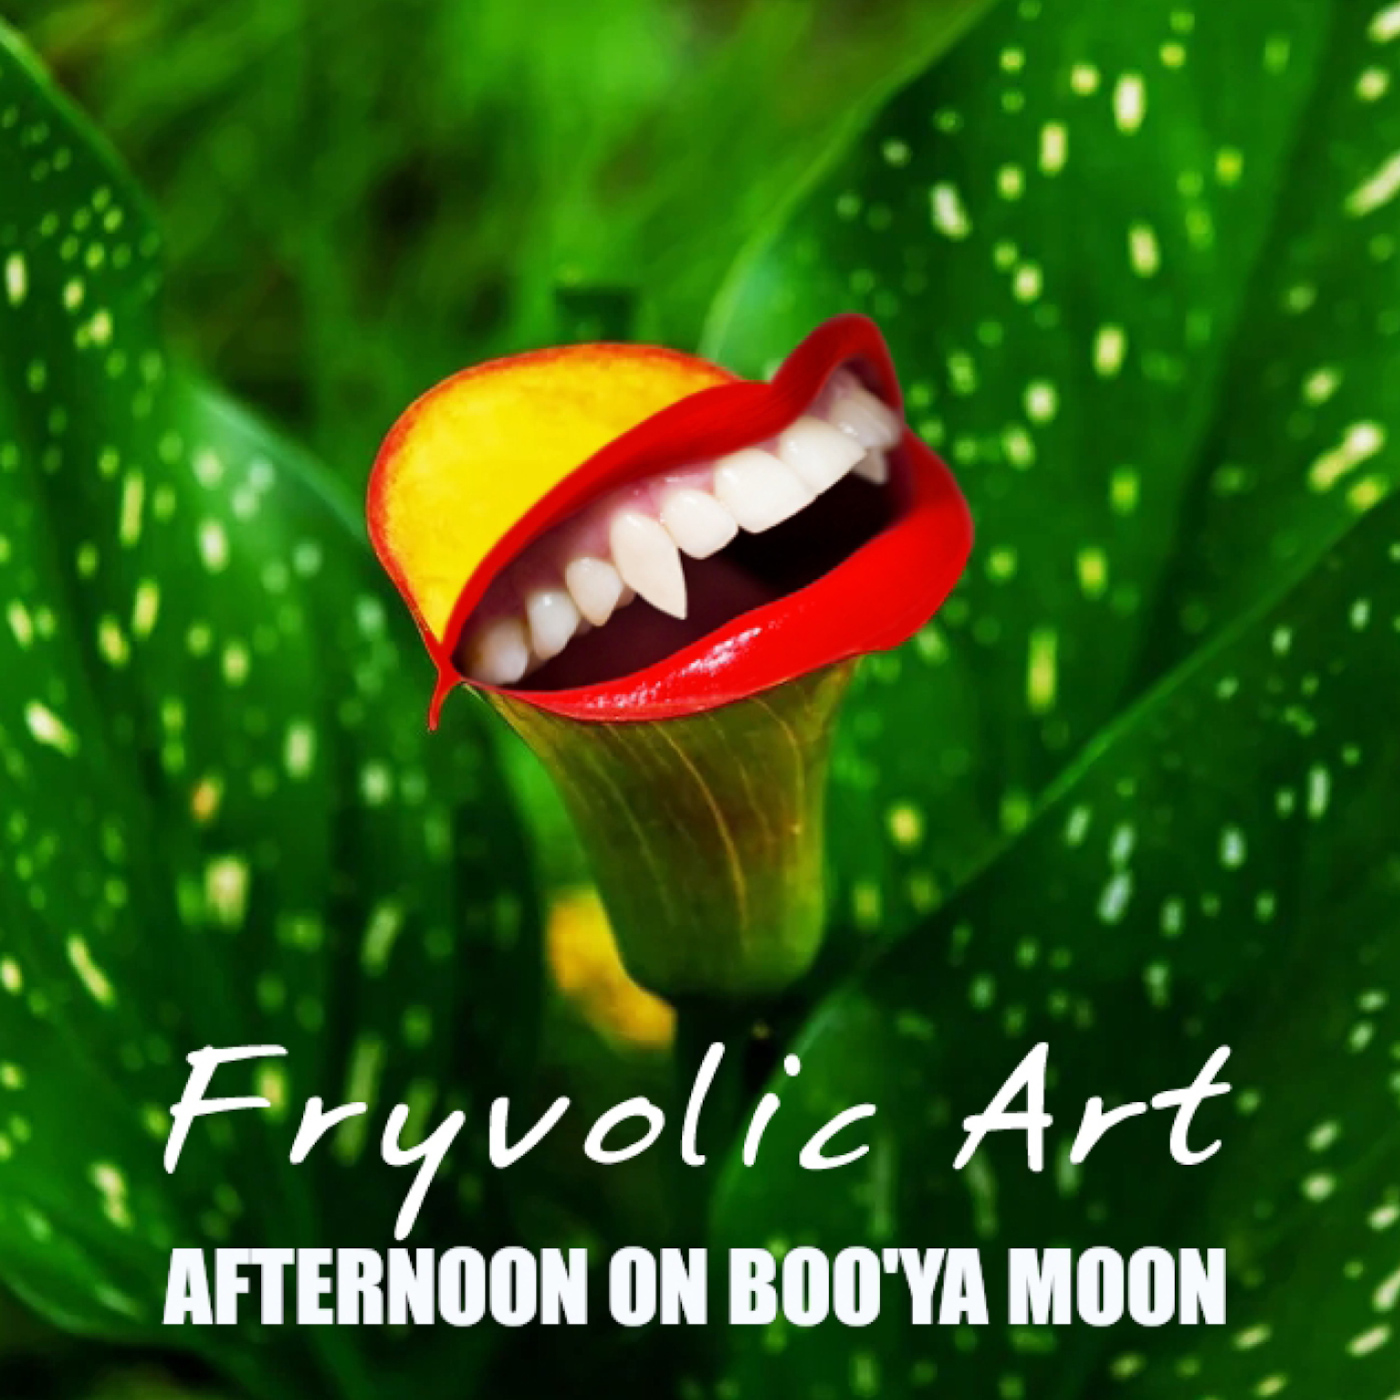 Fryvolic Art – Afternoon on Boo'ya Moon